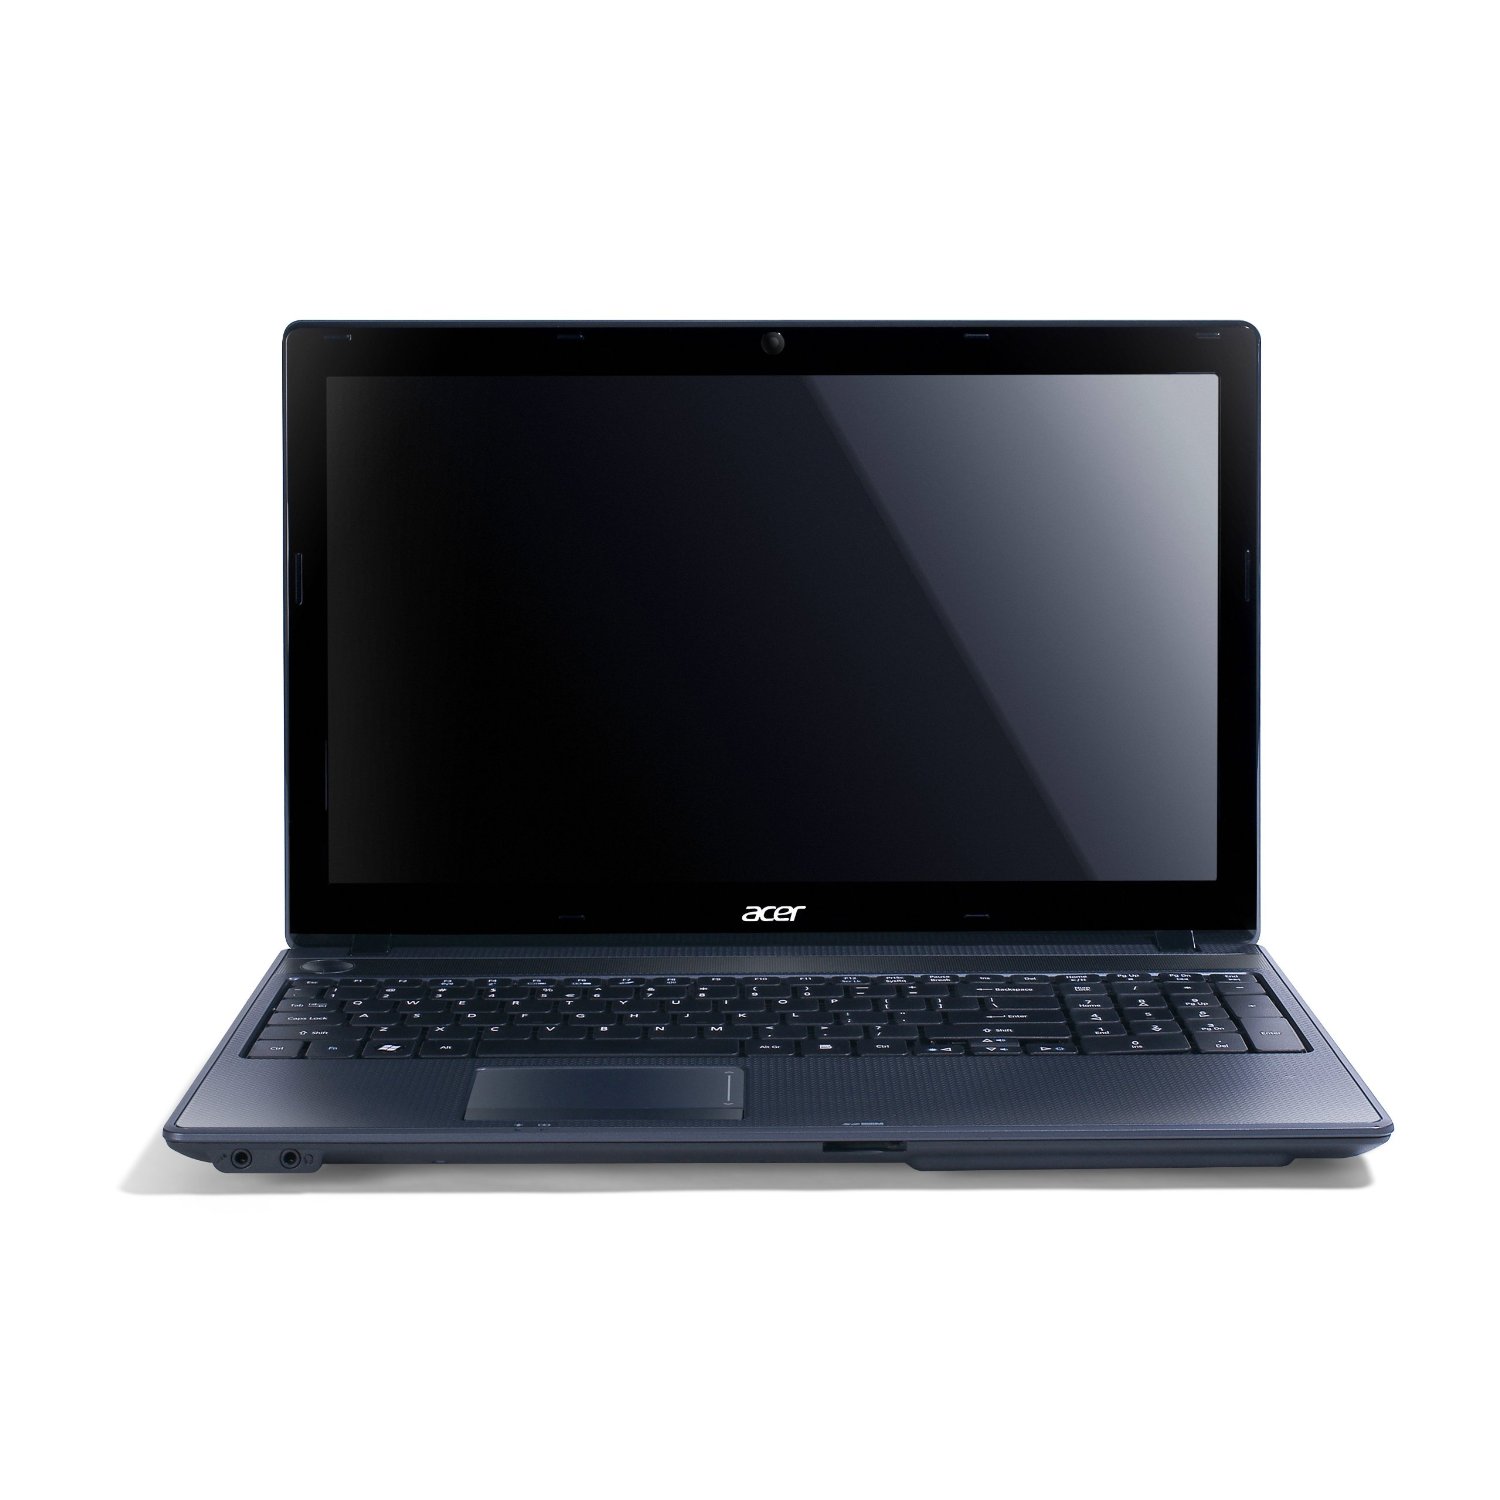 Acer Aspire 5349-2635 - Notebookcheck.net External Reviews